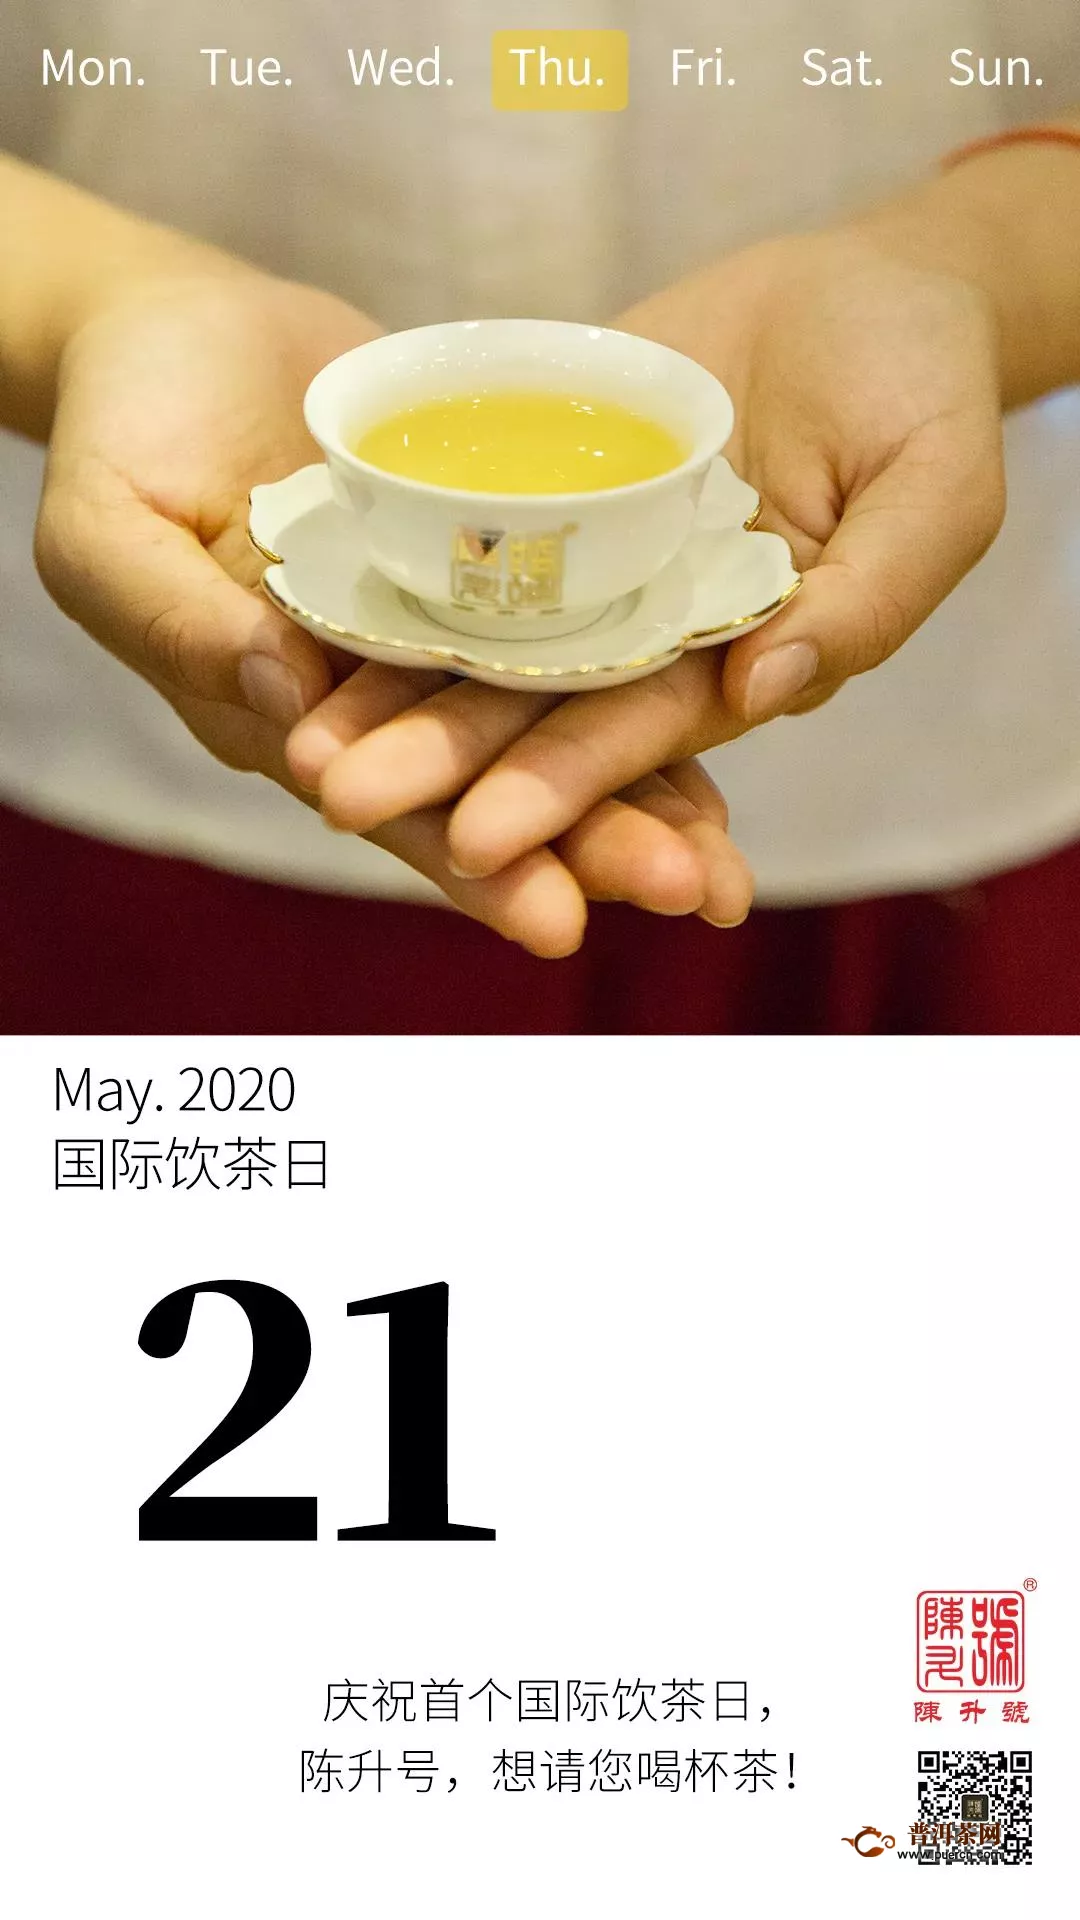 521国际茶日，陈升号千万福利大放送